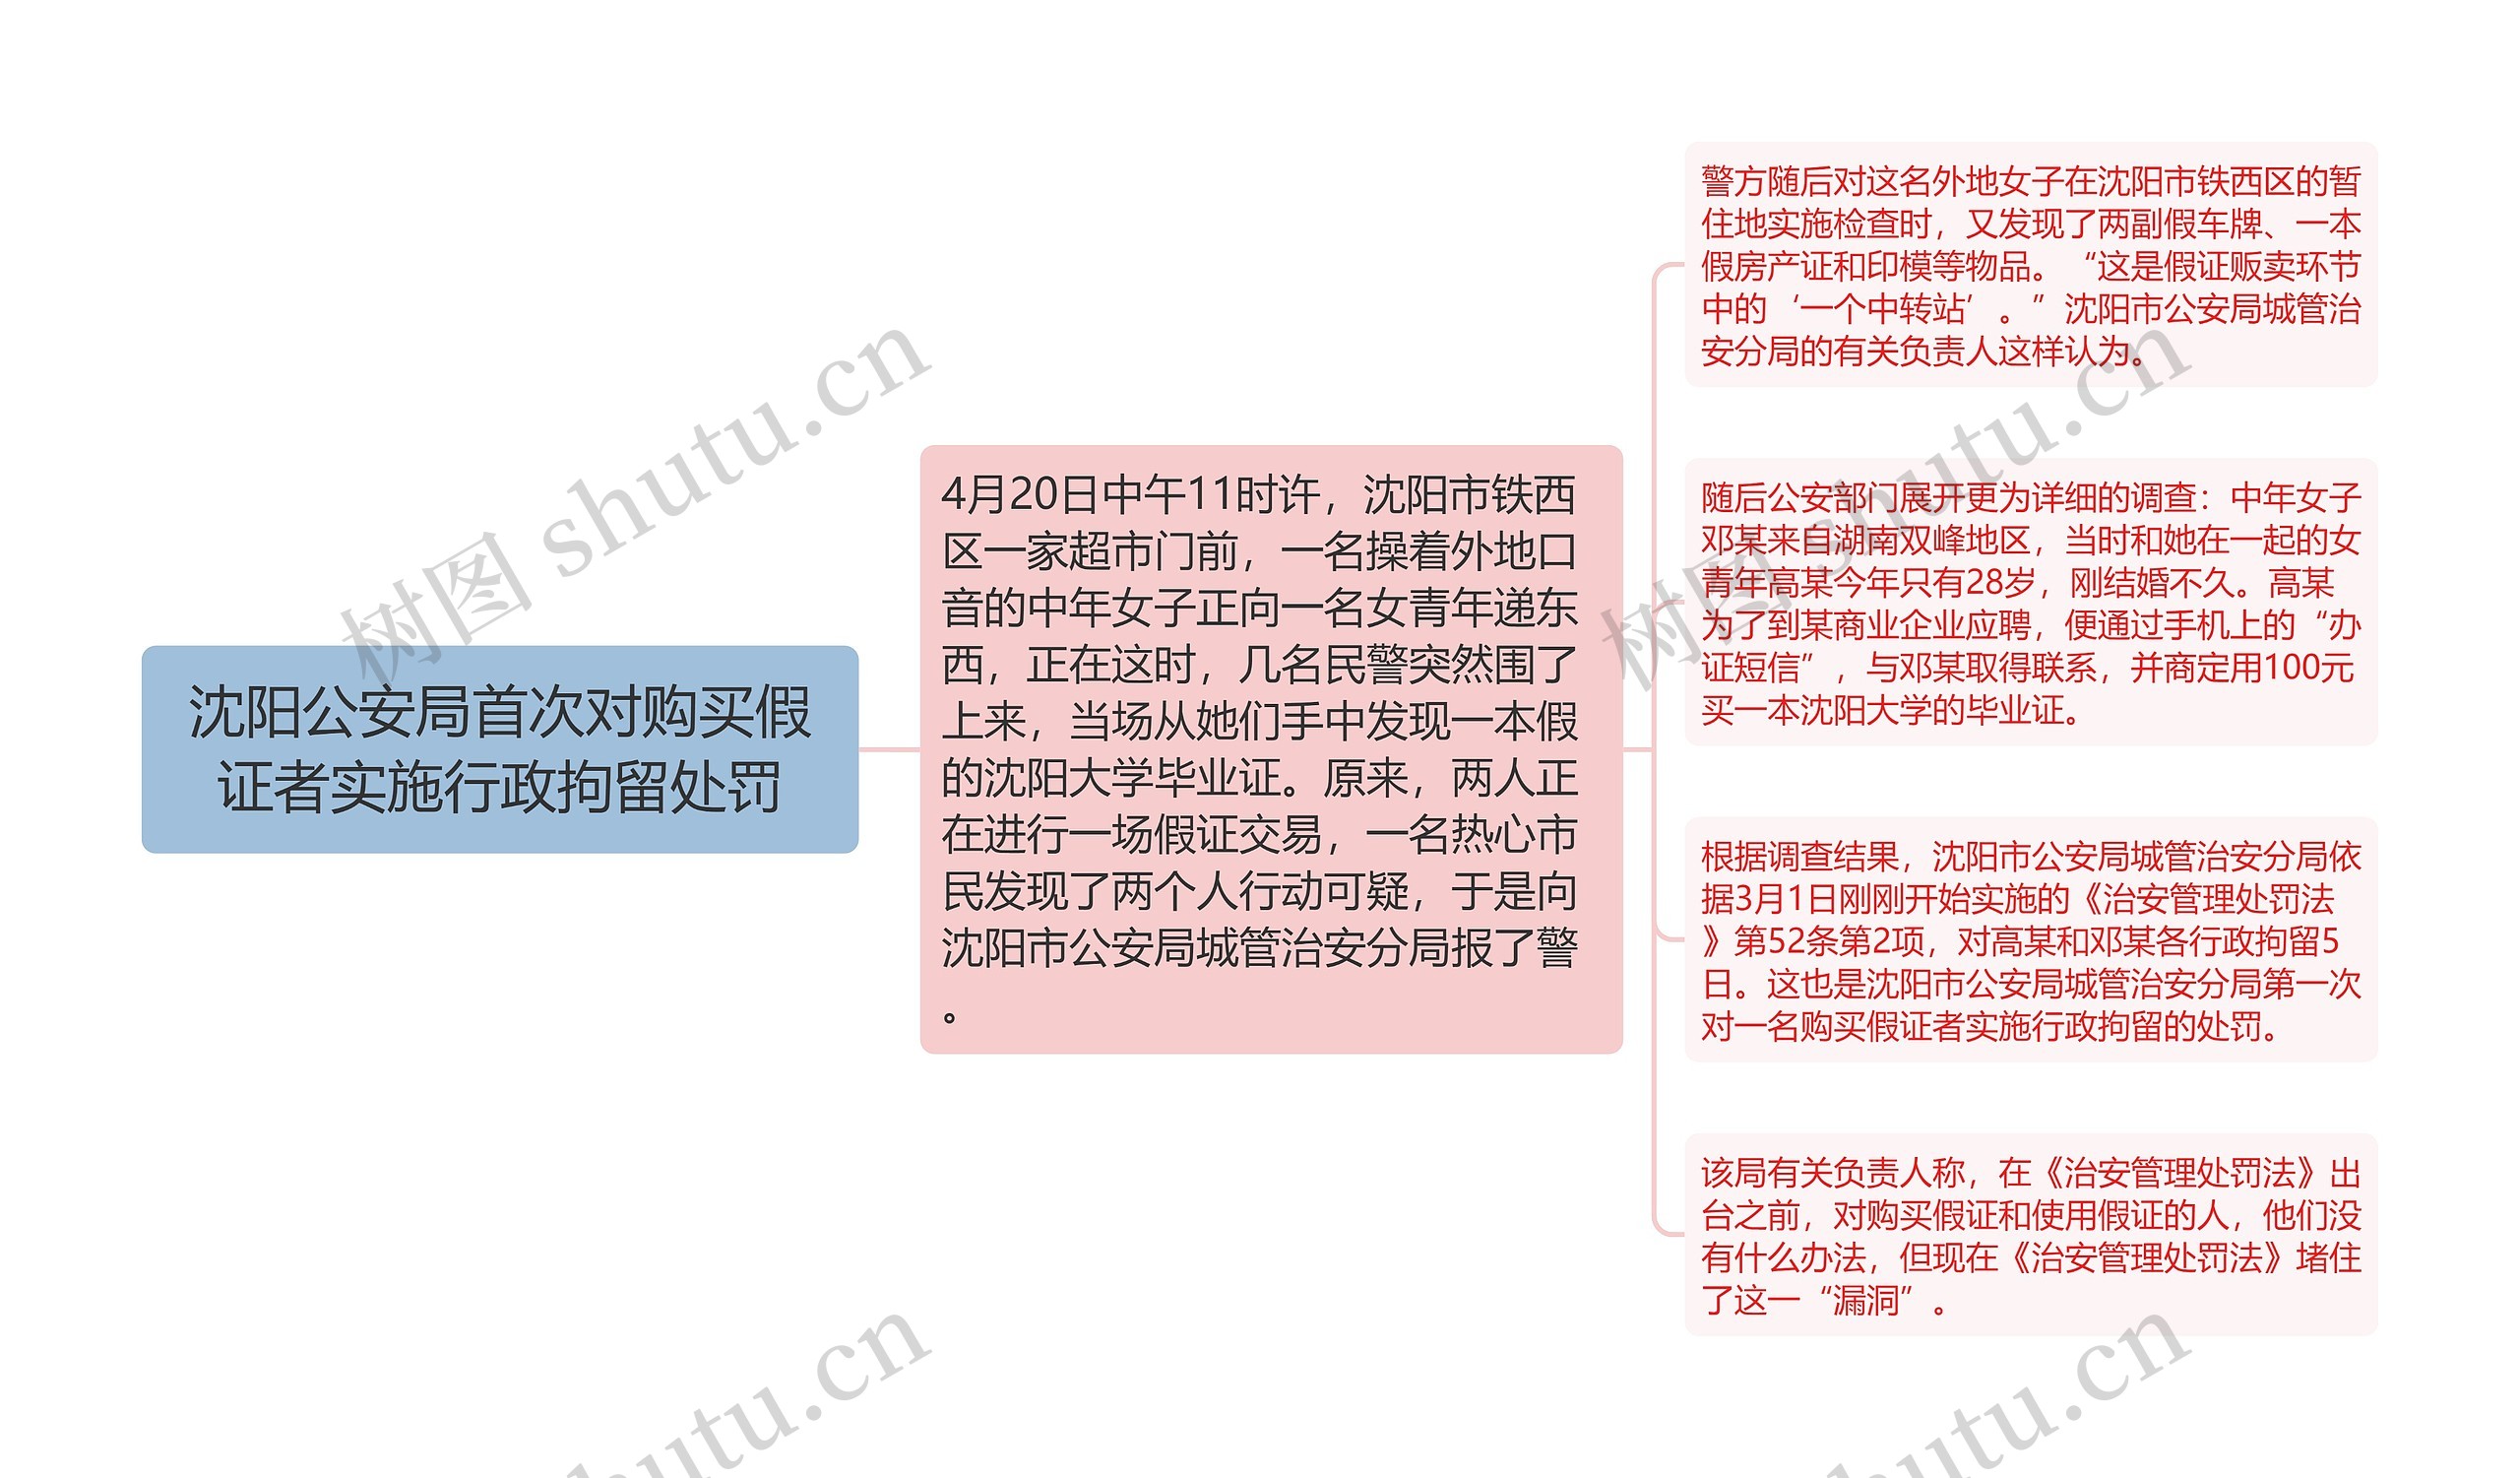 沈阳公安局首次对购买假证者实施行政拘留处罚